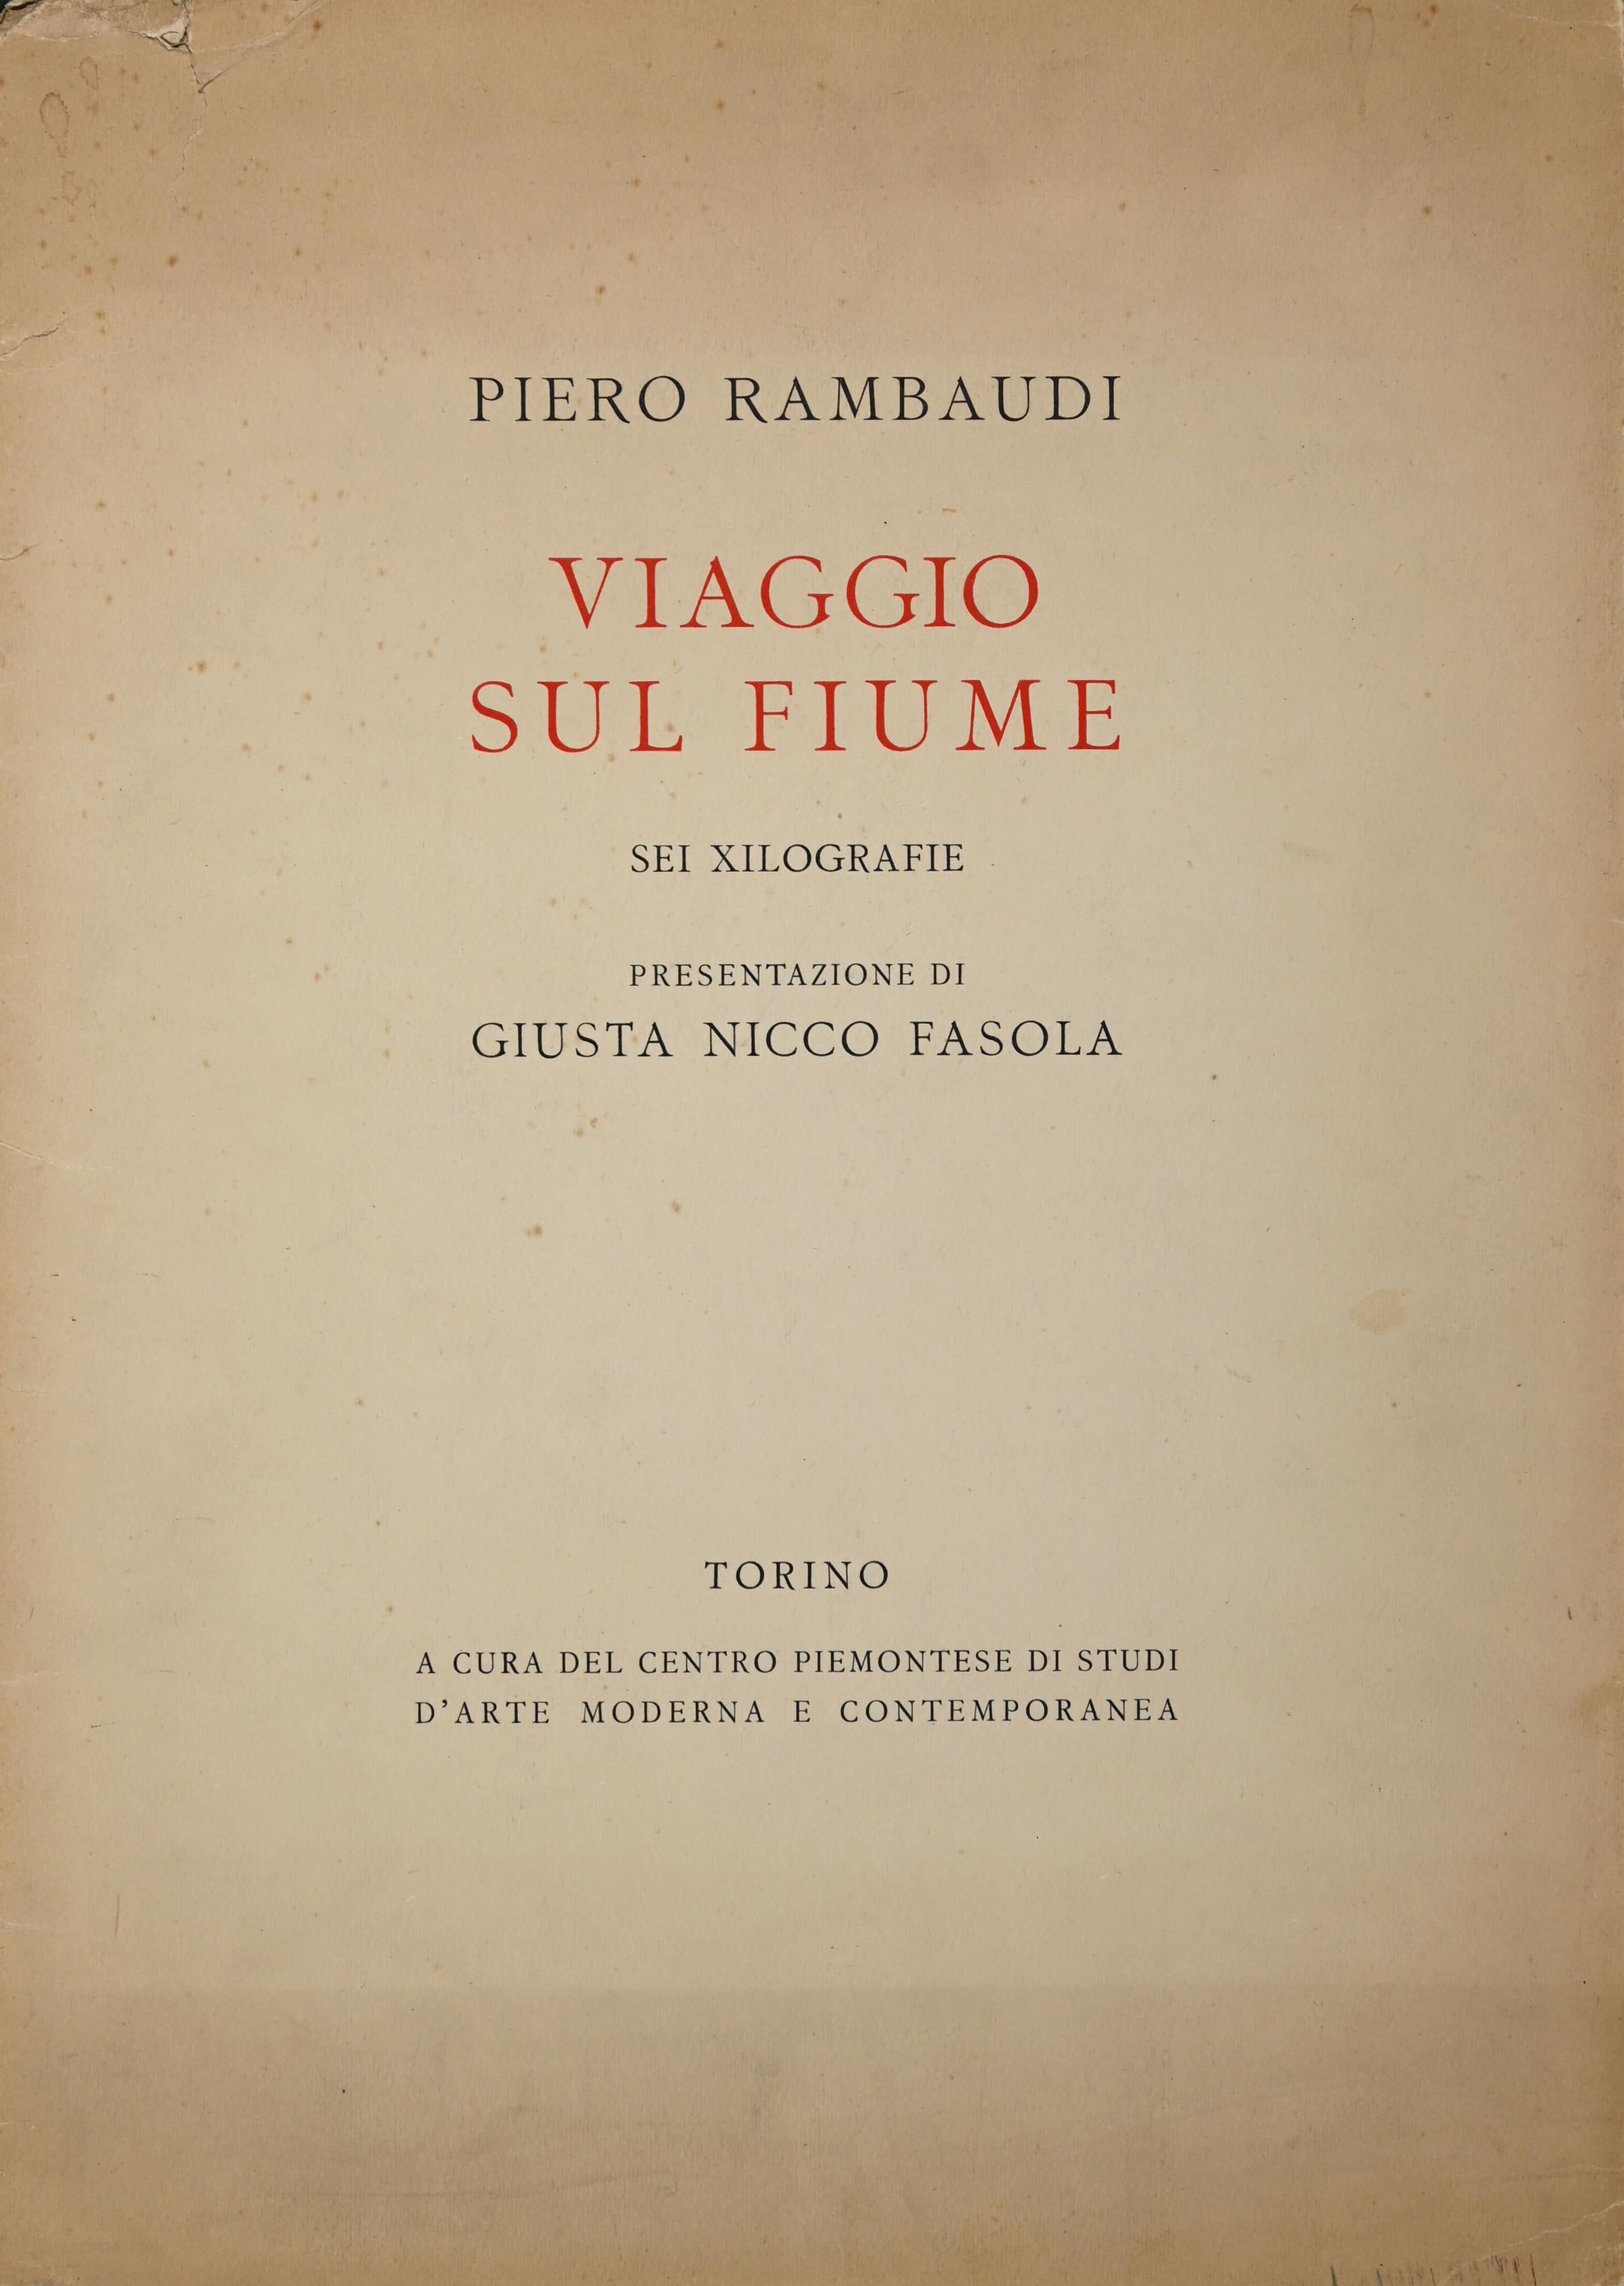 Viaggio sul fiume - Woodcut Portfolio by Piero Rambaudi - 1955 For Sale 3